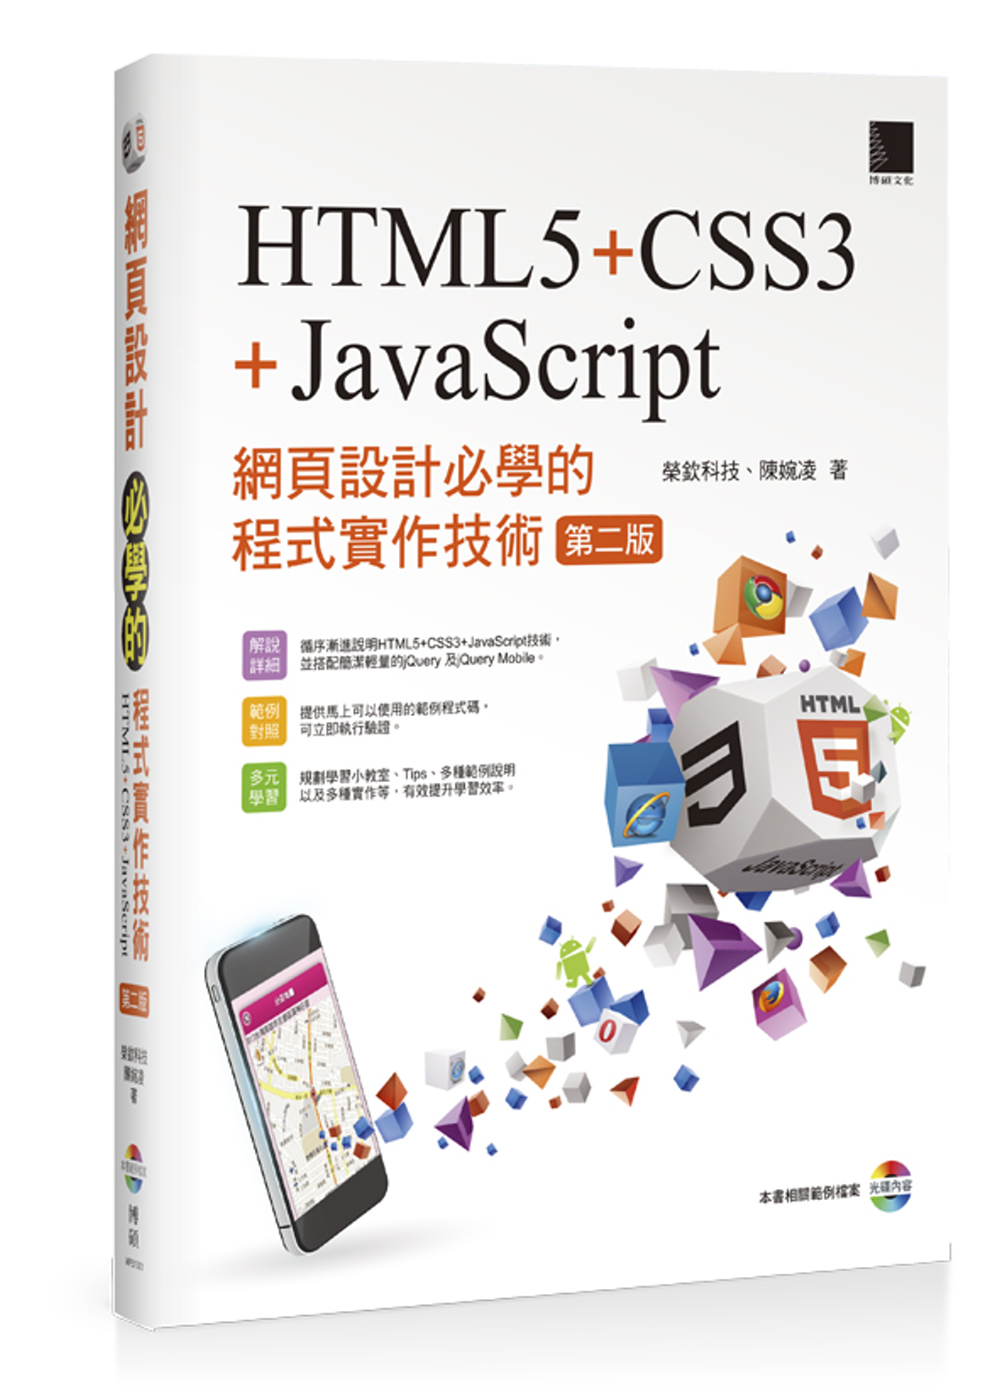 網頁設計必學的程式實作技術-HTML5+CSS3+JavaScript (第二版) 附CD